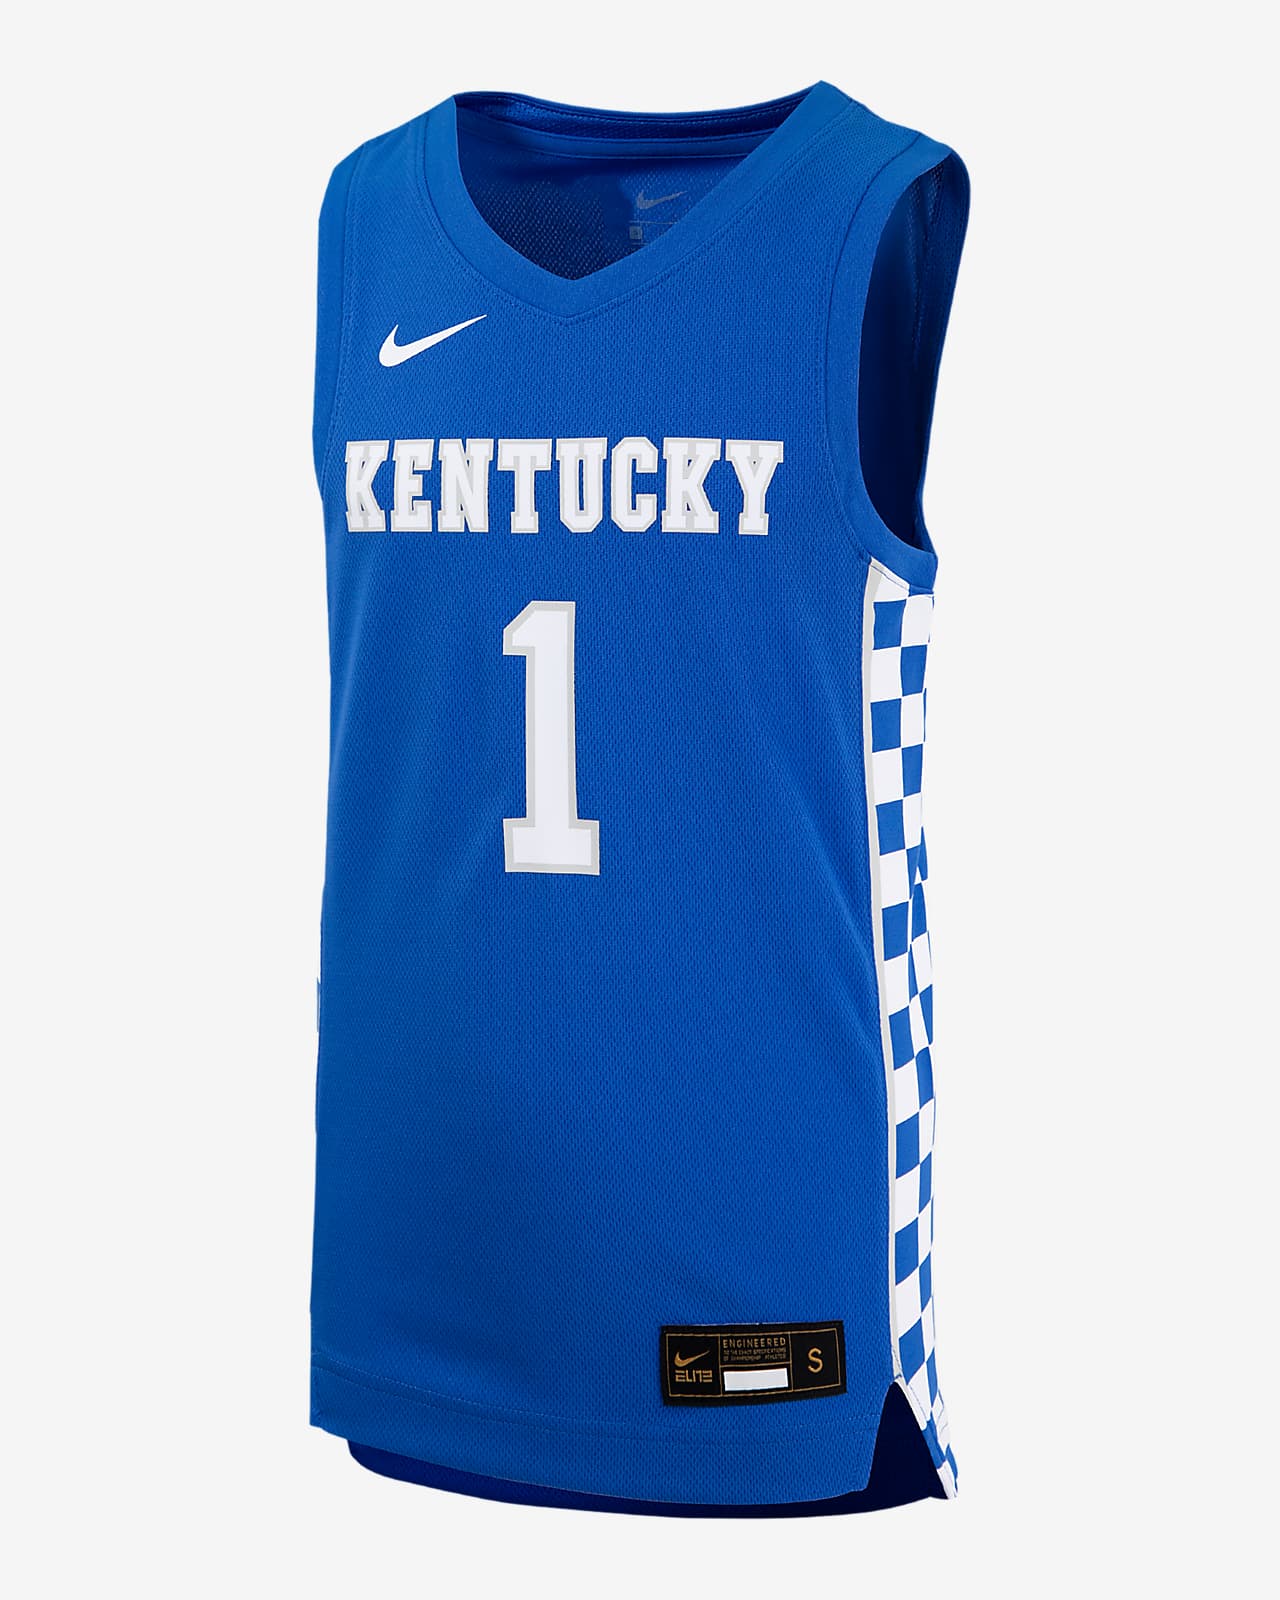 kentucky basketball jersey